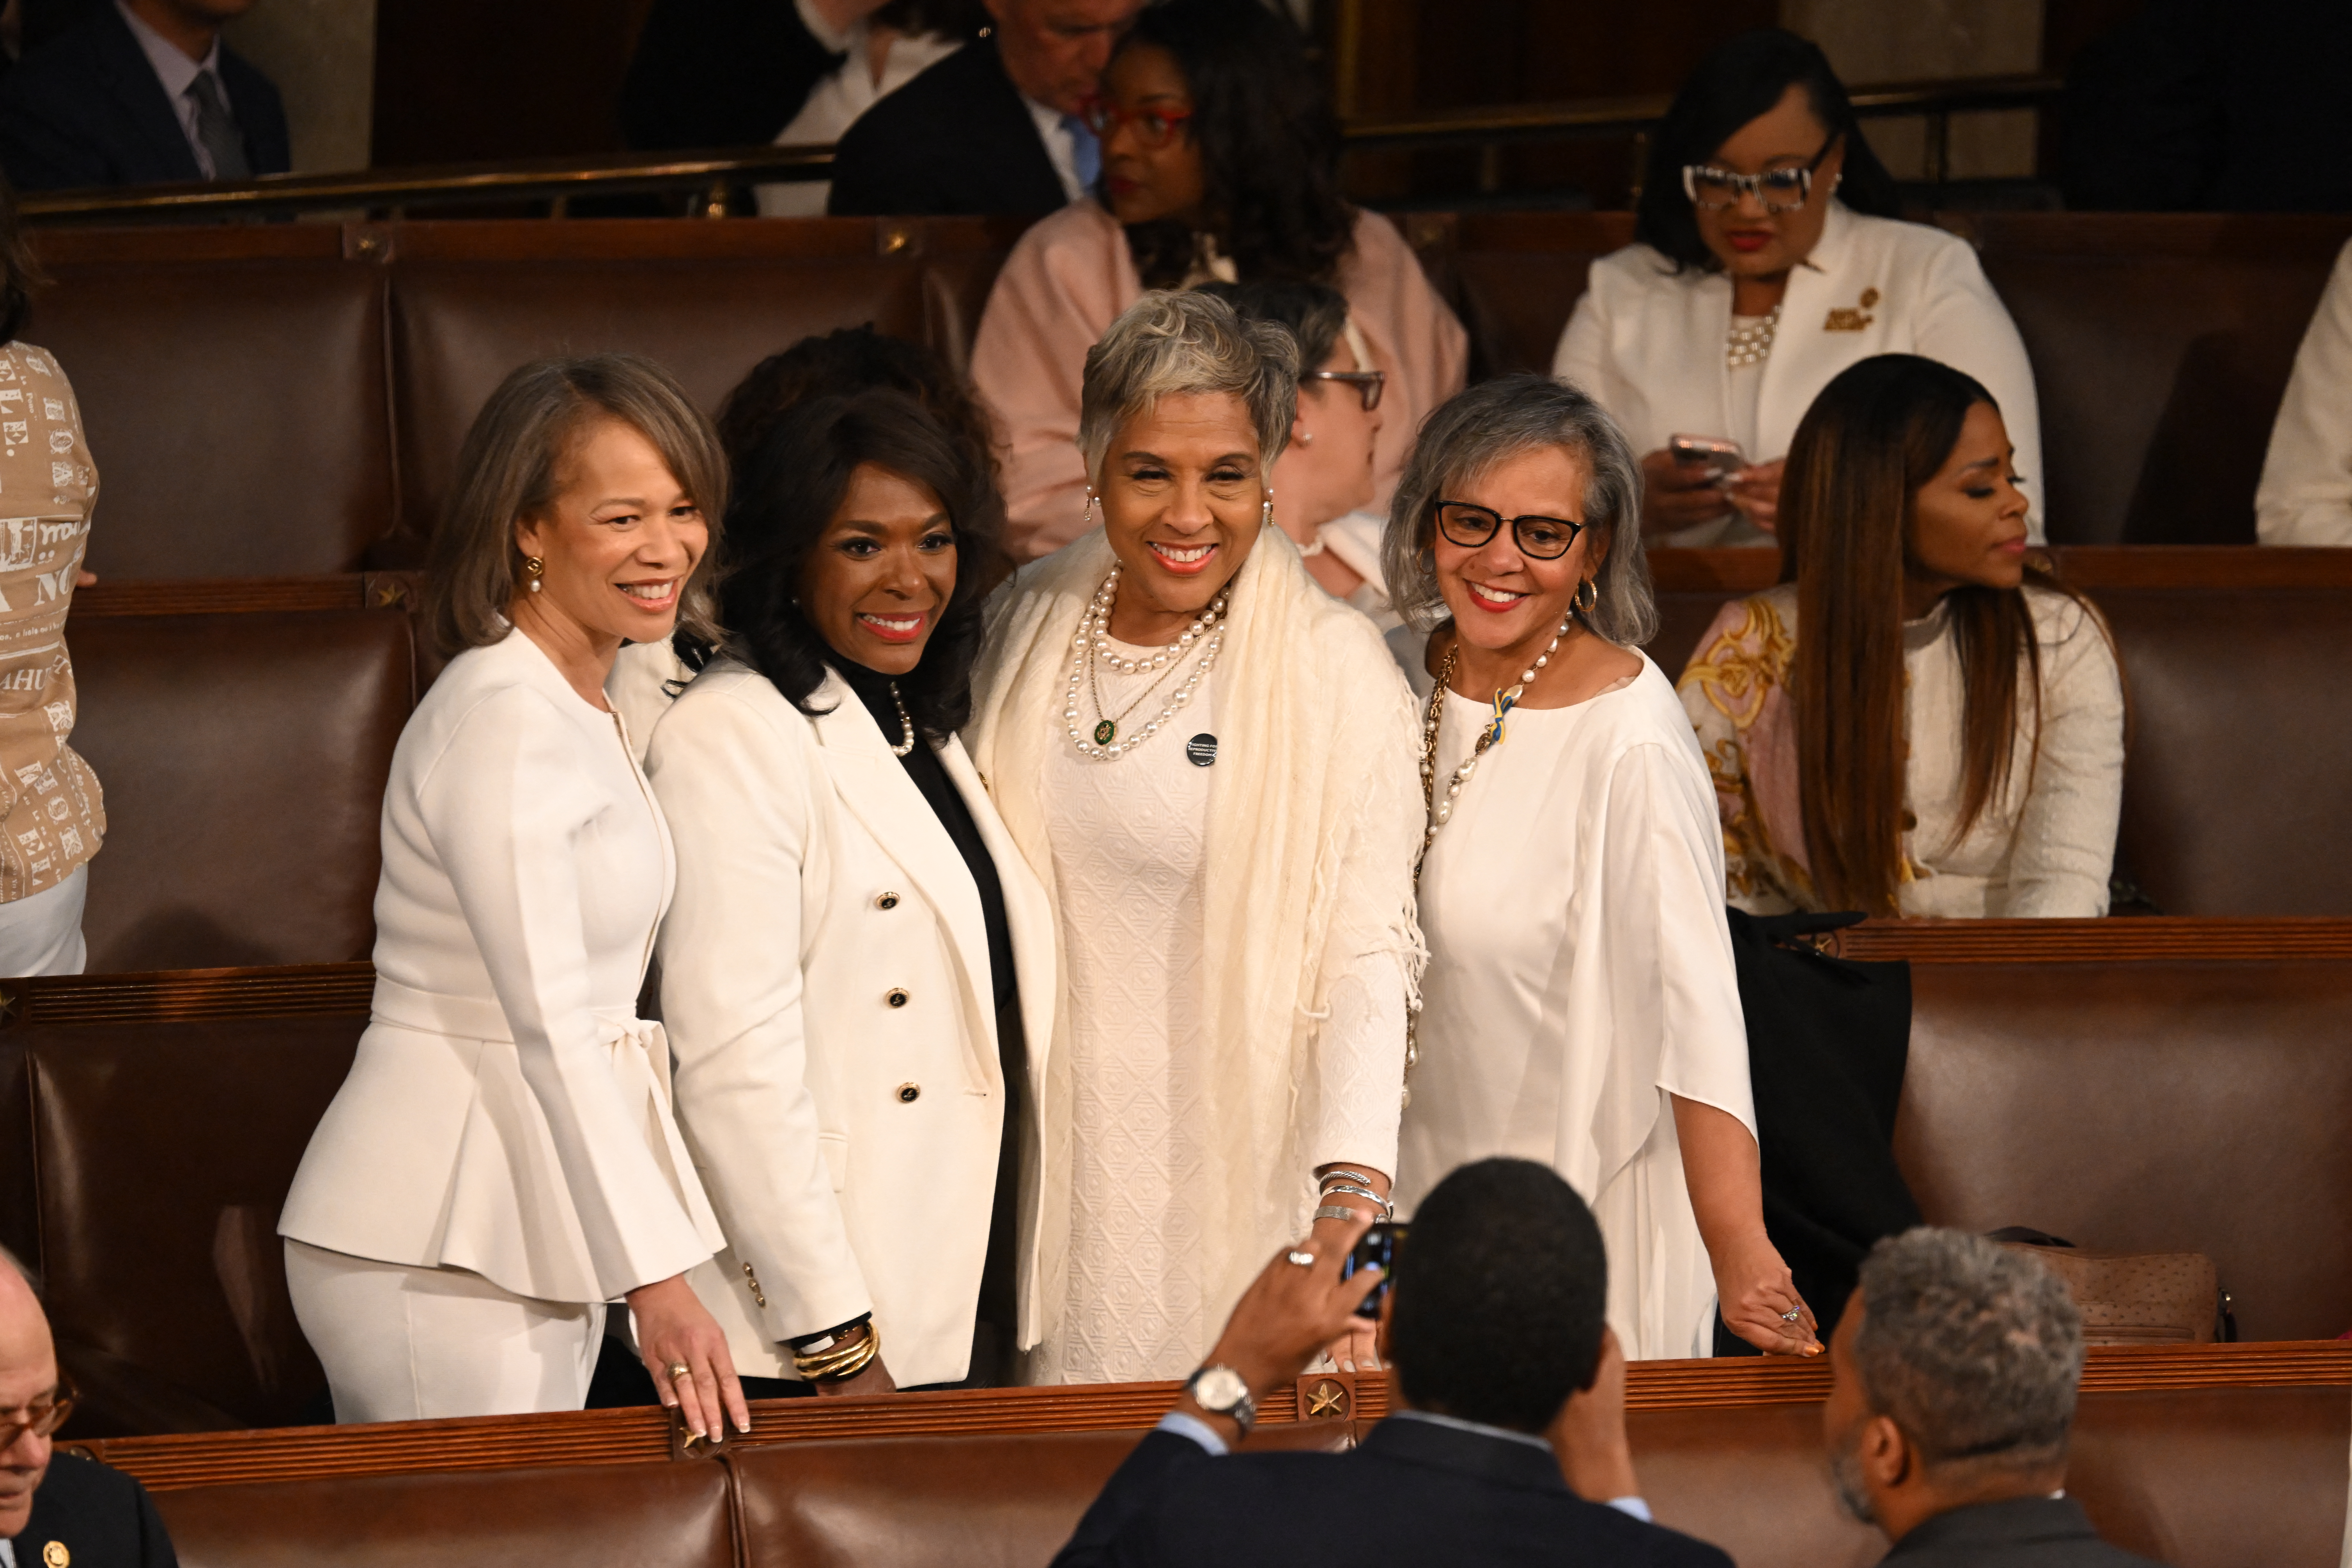 Demokratische Abgeordnete kleiden sich in Weiß, um auf die Rechte der Frauen aufmerksam zu machen